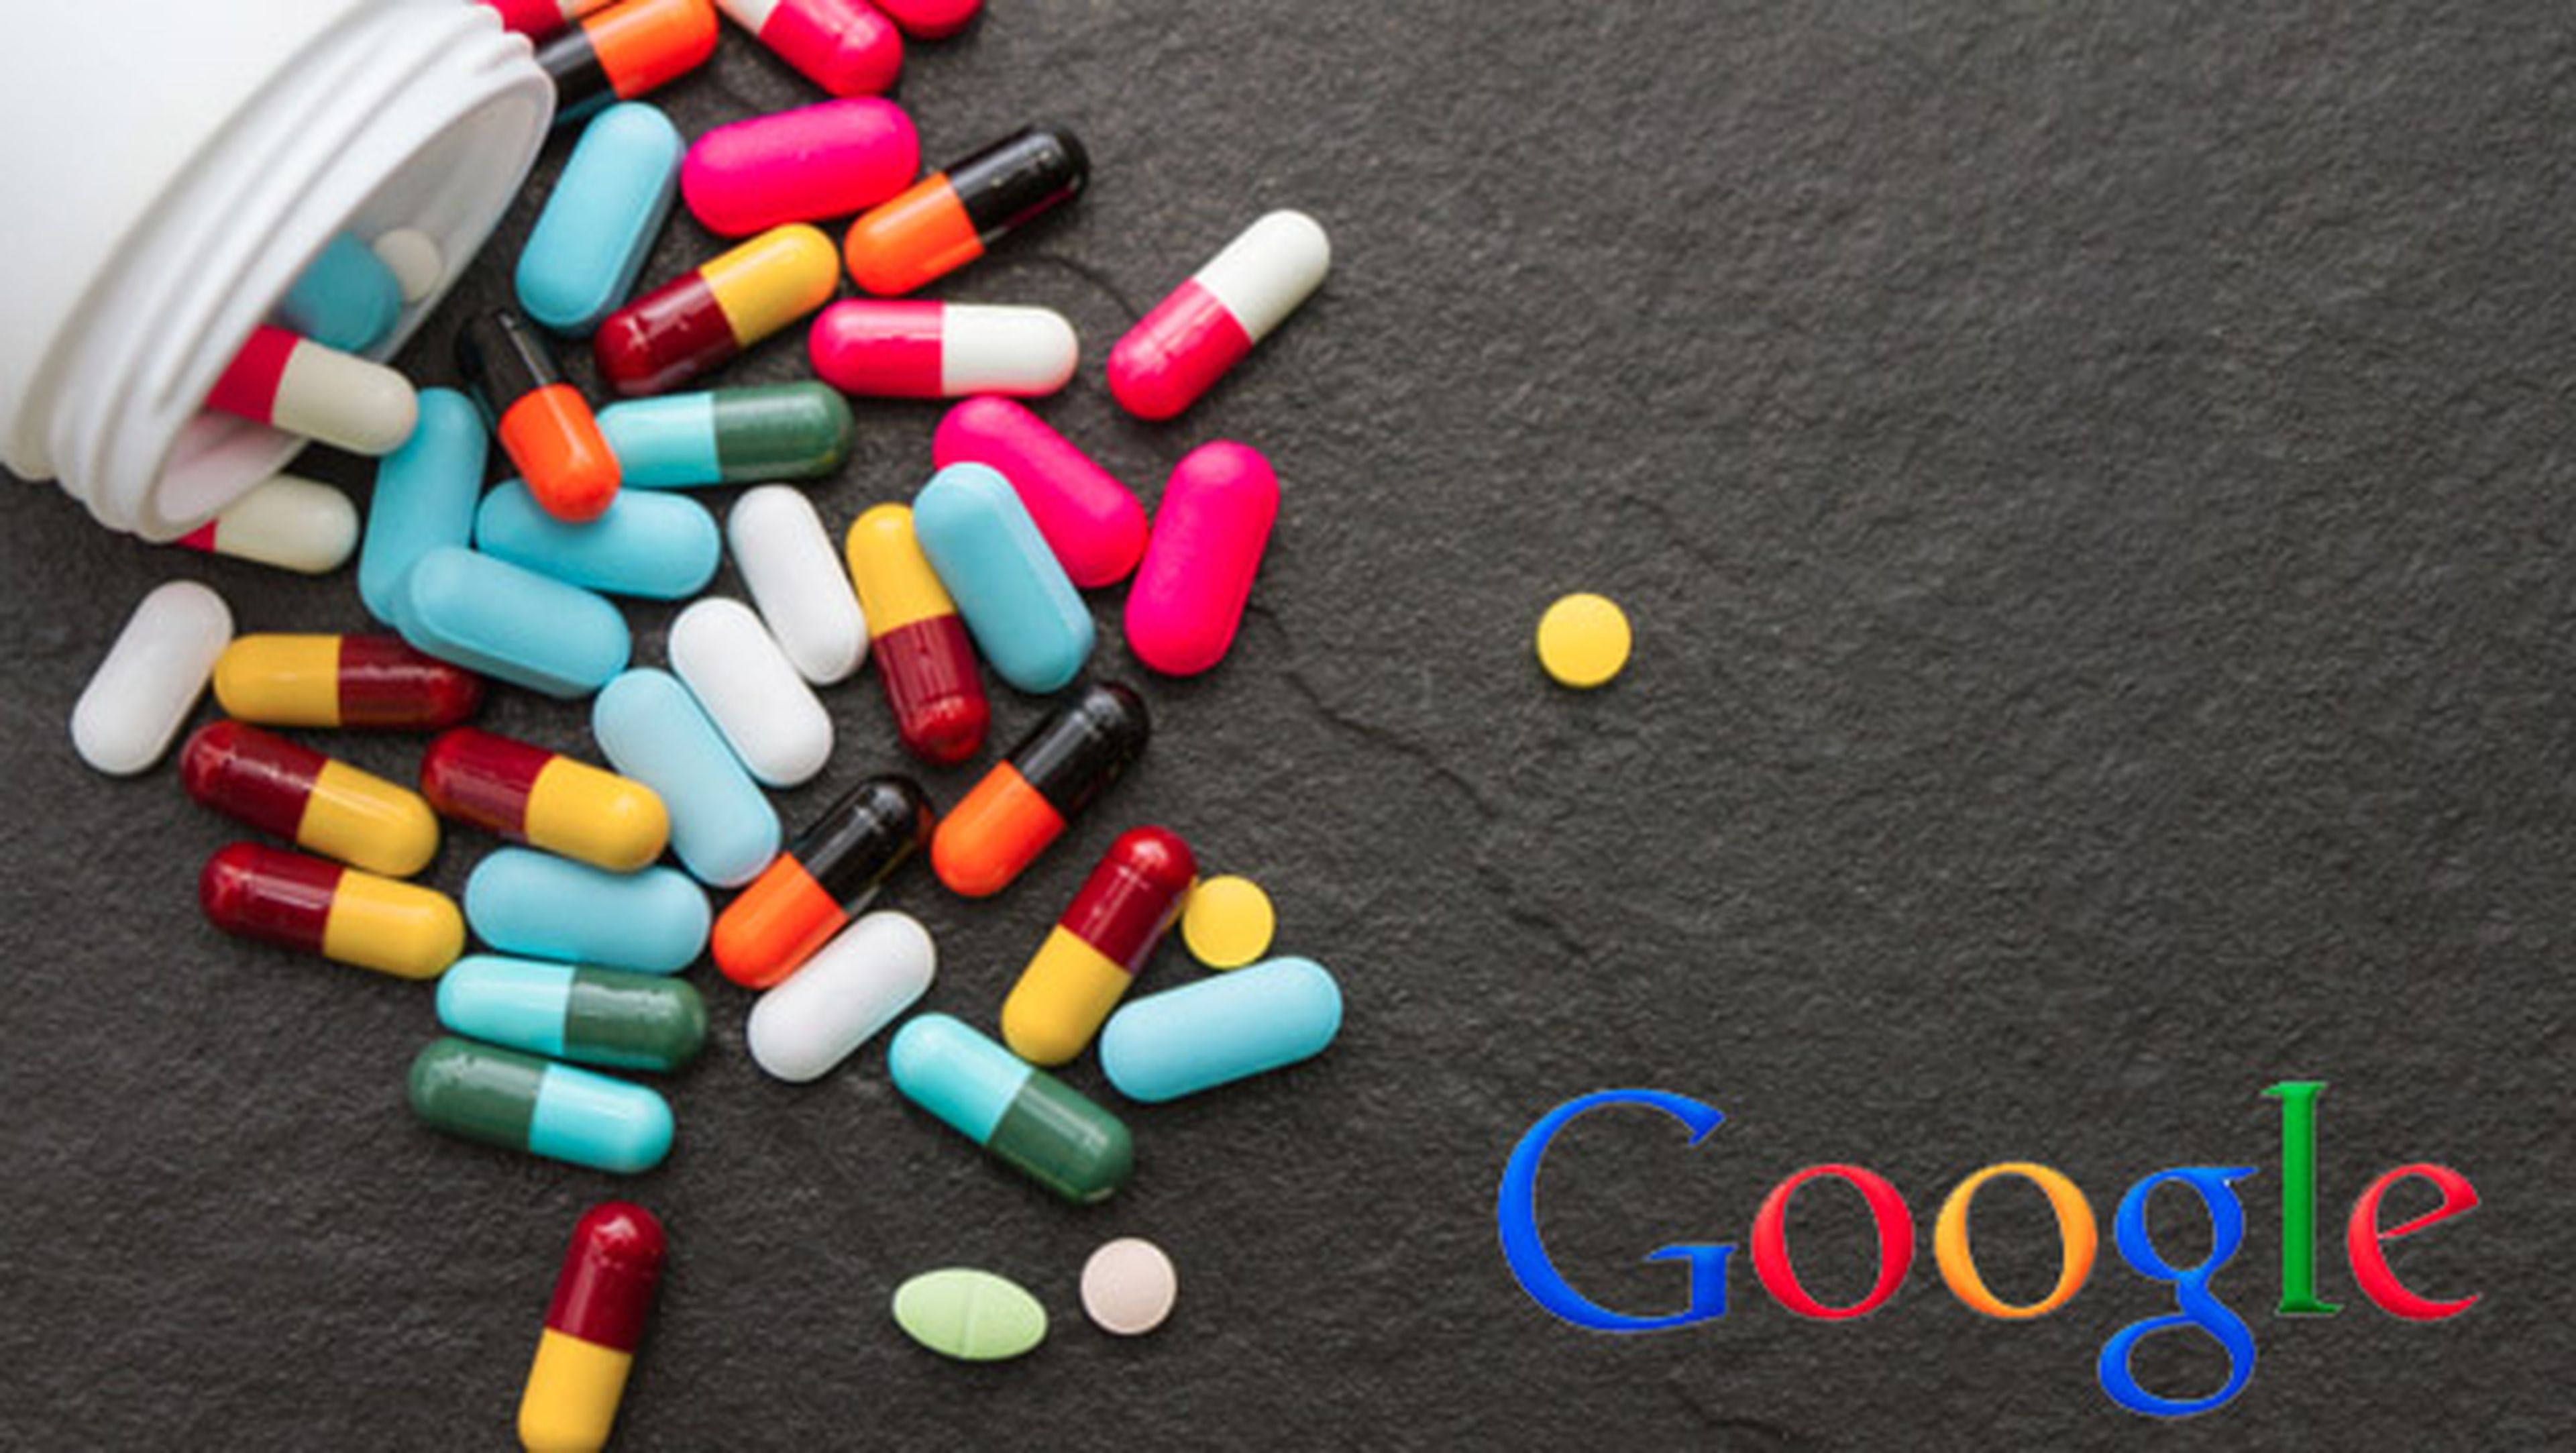 Diagnóstico mediante pastillas Google apuesta salud